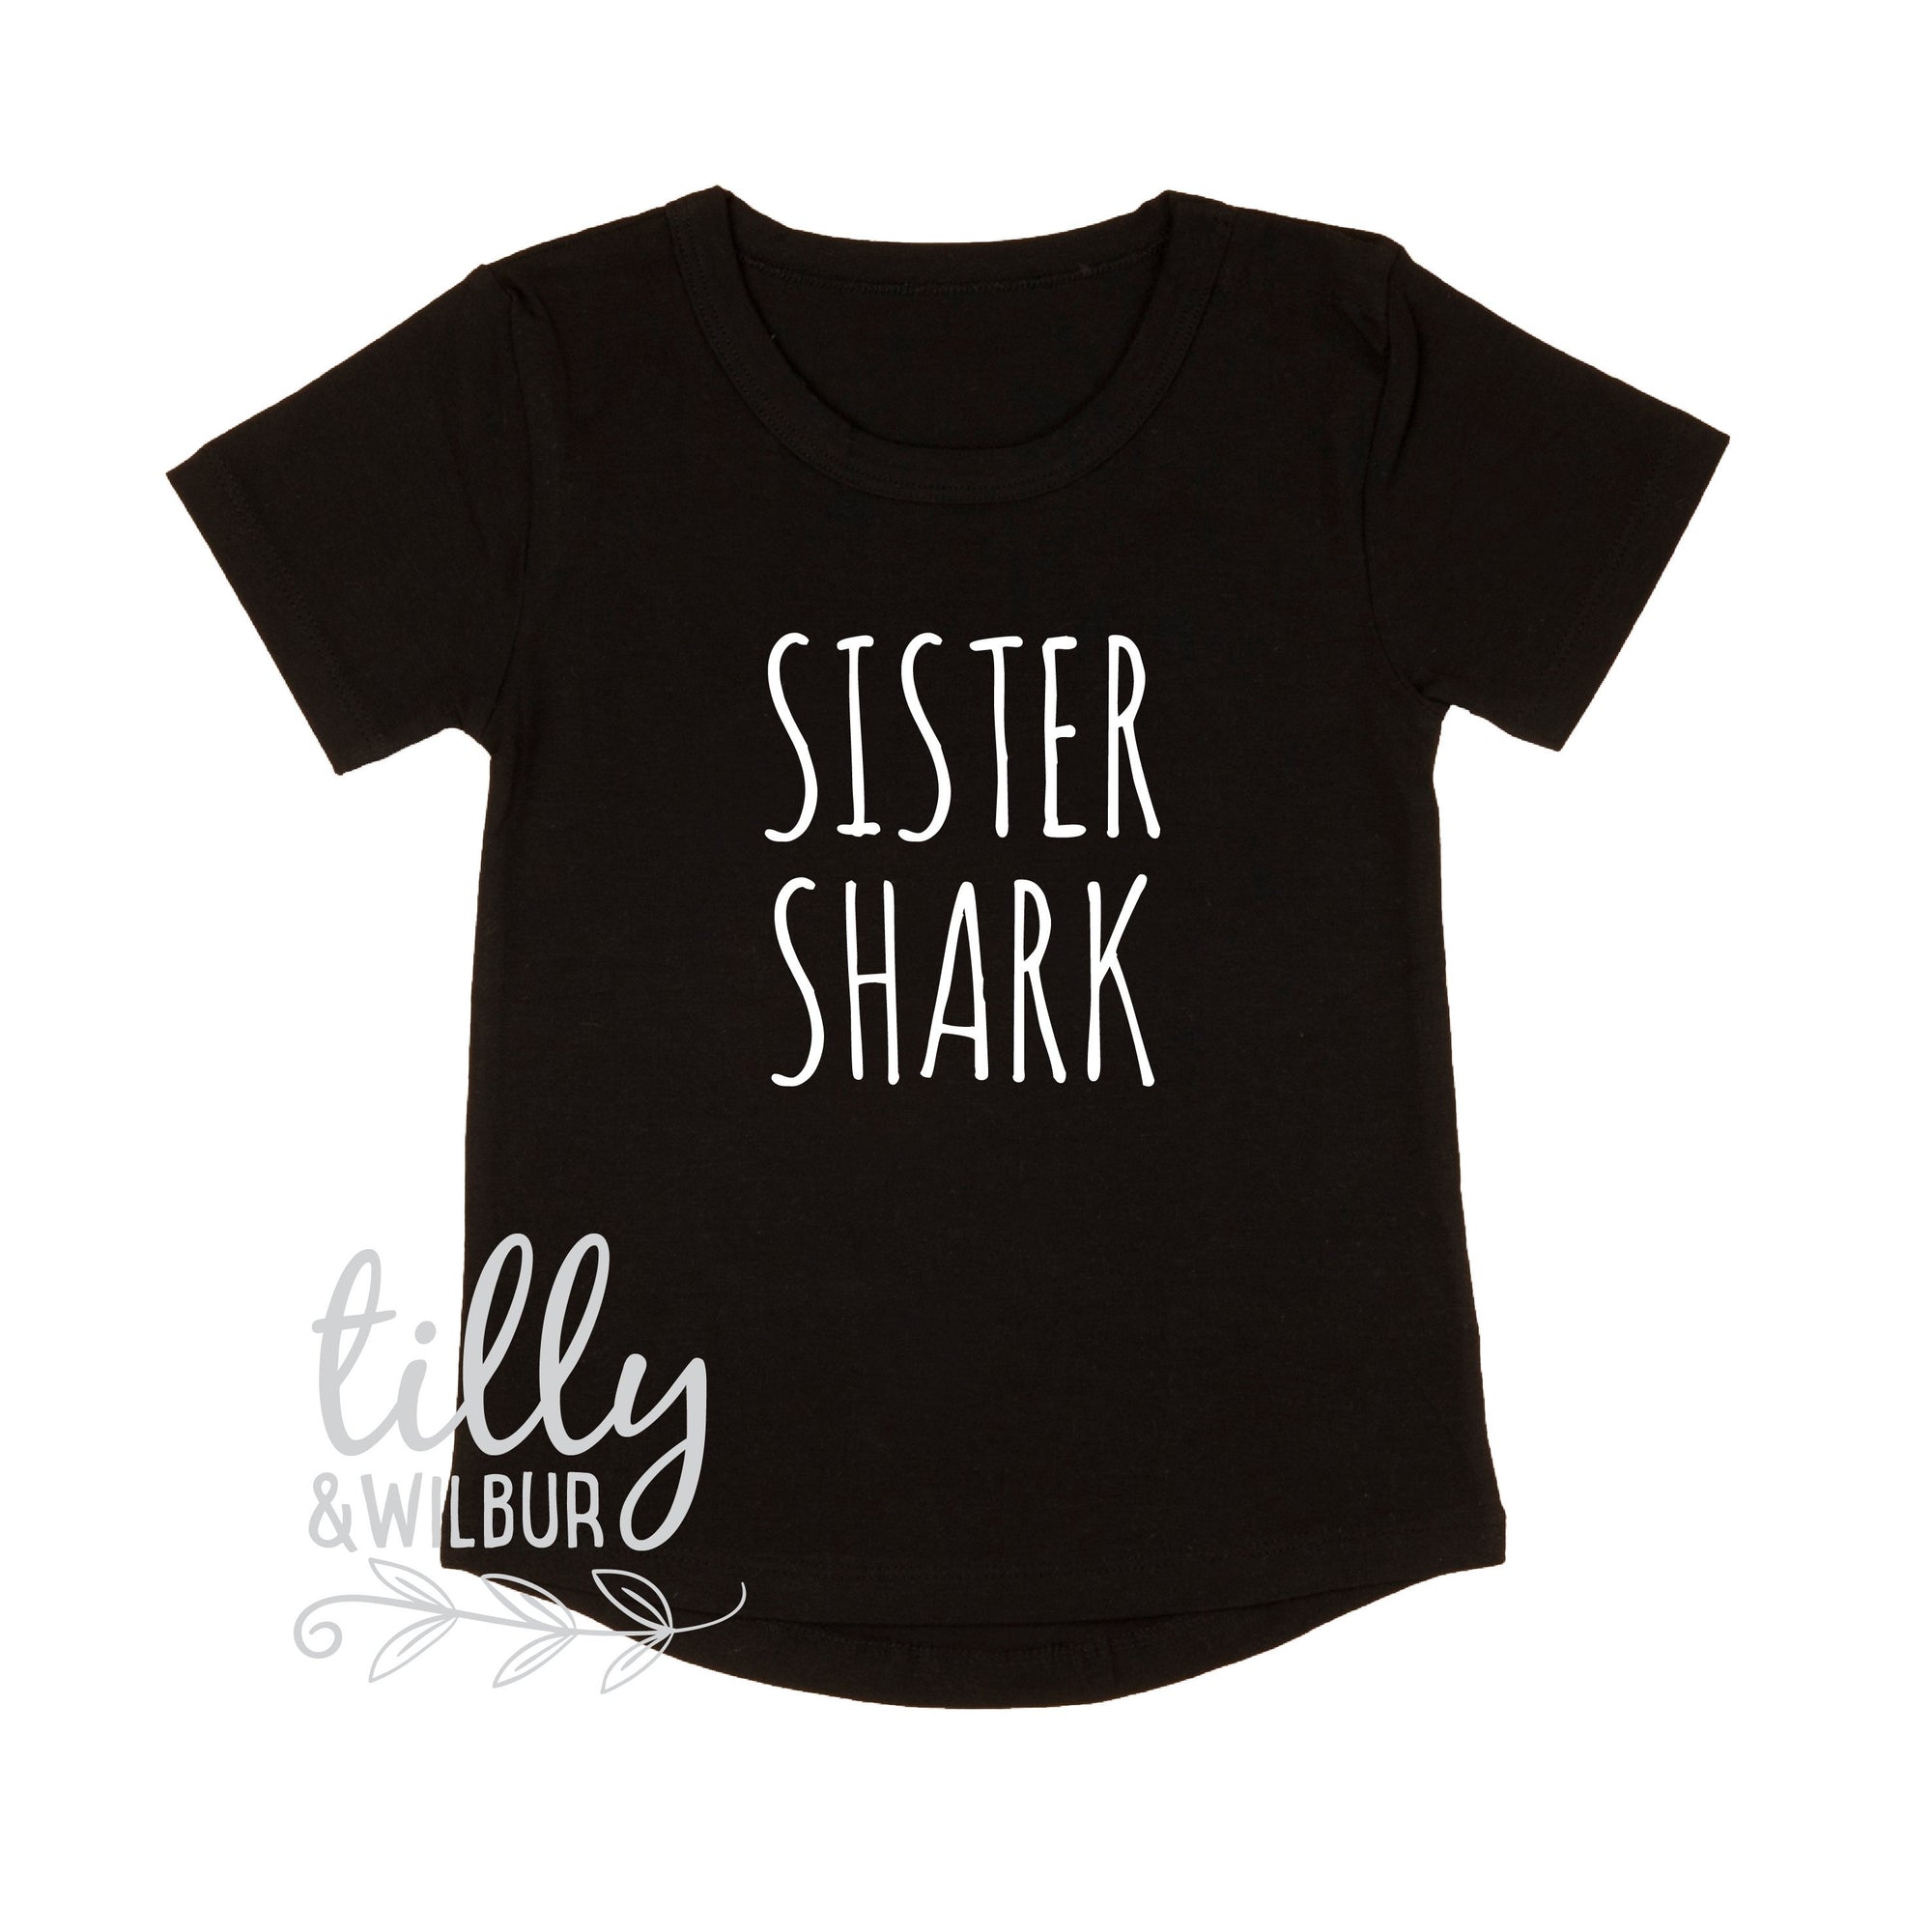 Sister Shark Doo Doo Doo Doo Doo Doo, Baby Shark Doo Doo Doo, Matching Shirts, Matching Shark Family Shirts, Matching Shark Family T-Shirts